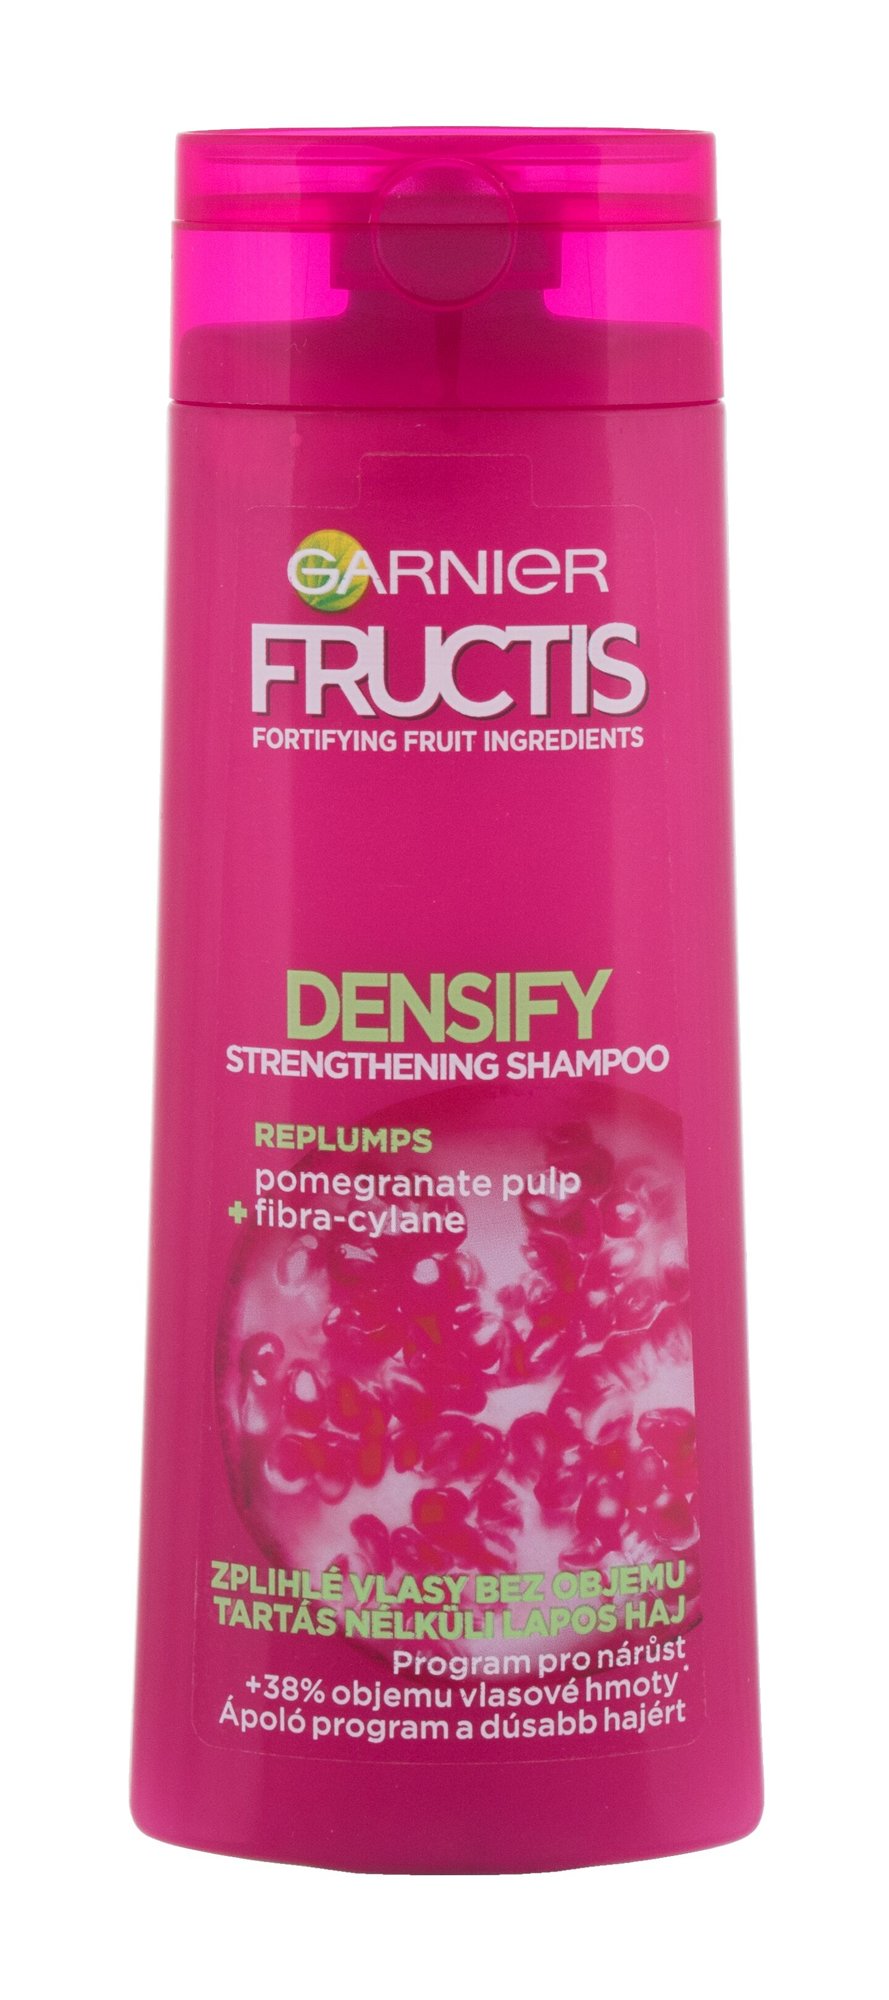 Garnier Fructis Densify 250ml šampūnas